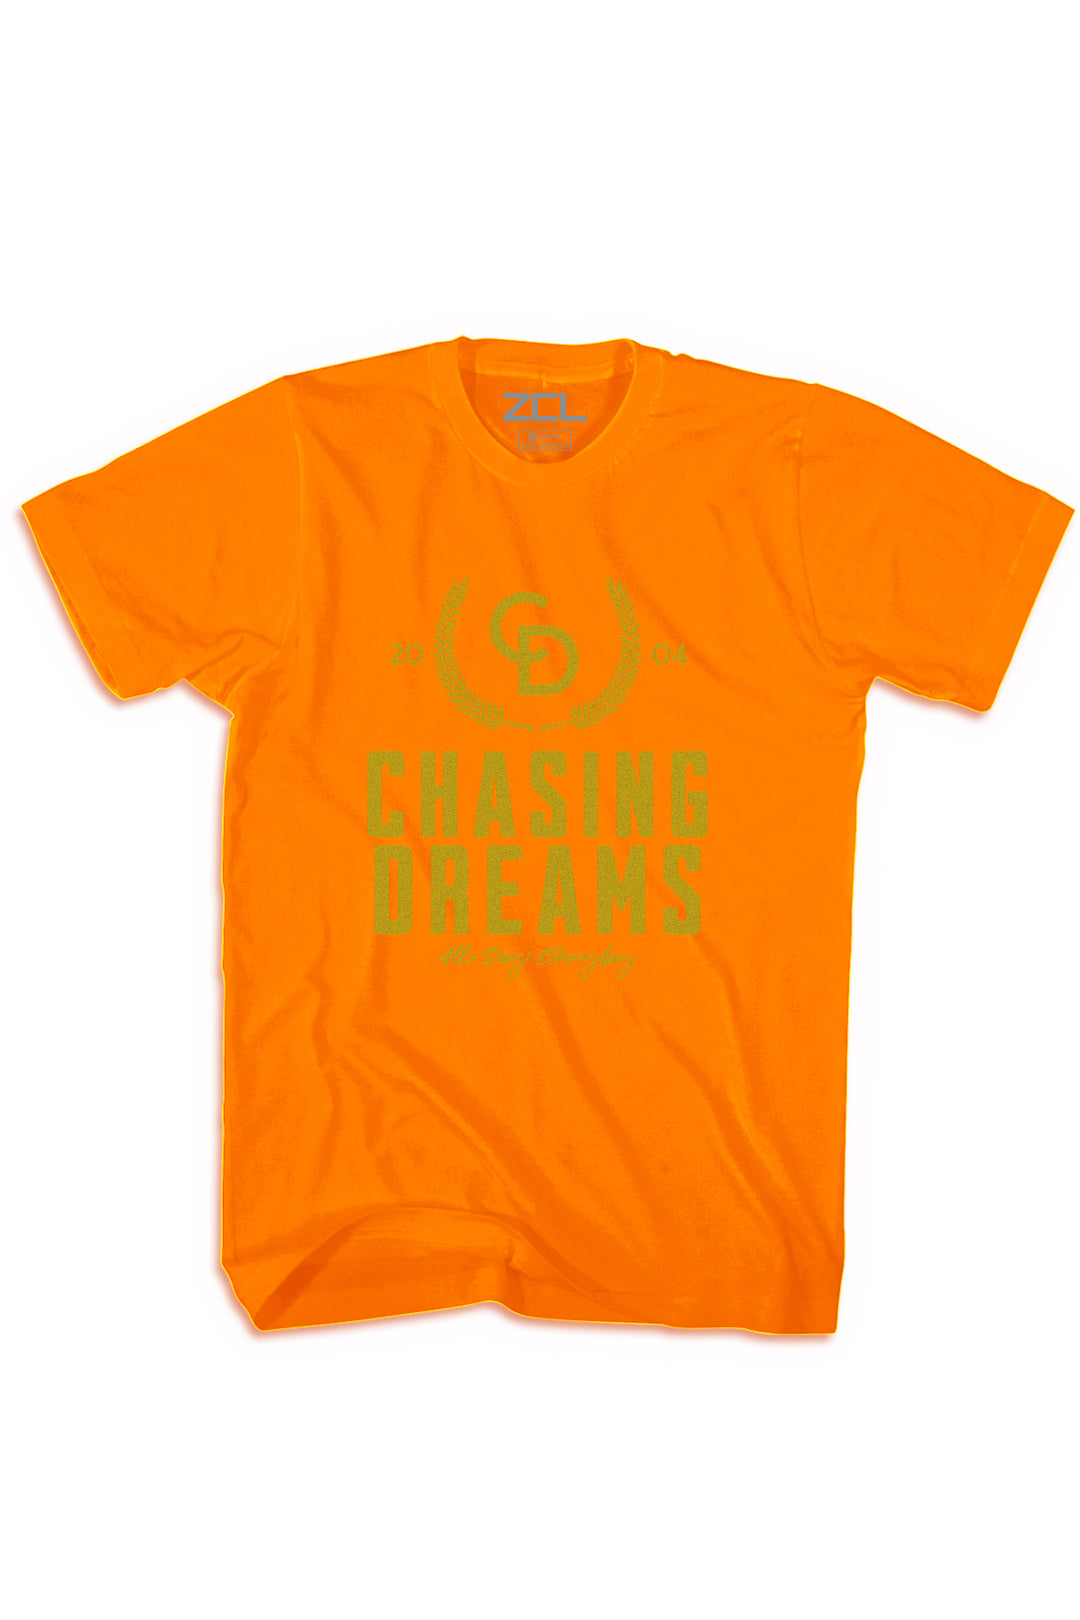 Chasing Dreams Tee (Gold Logo) - Zamage